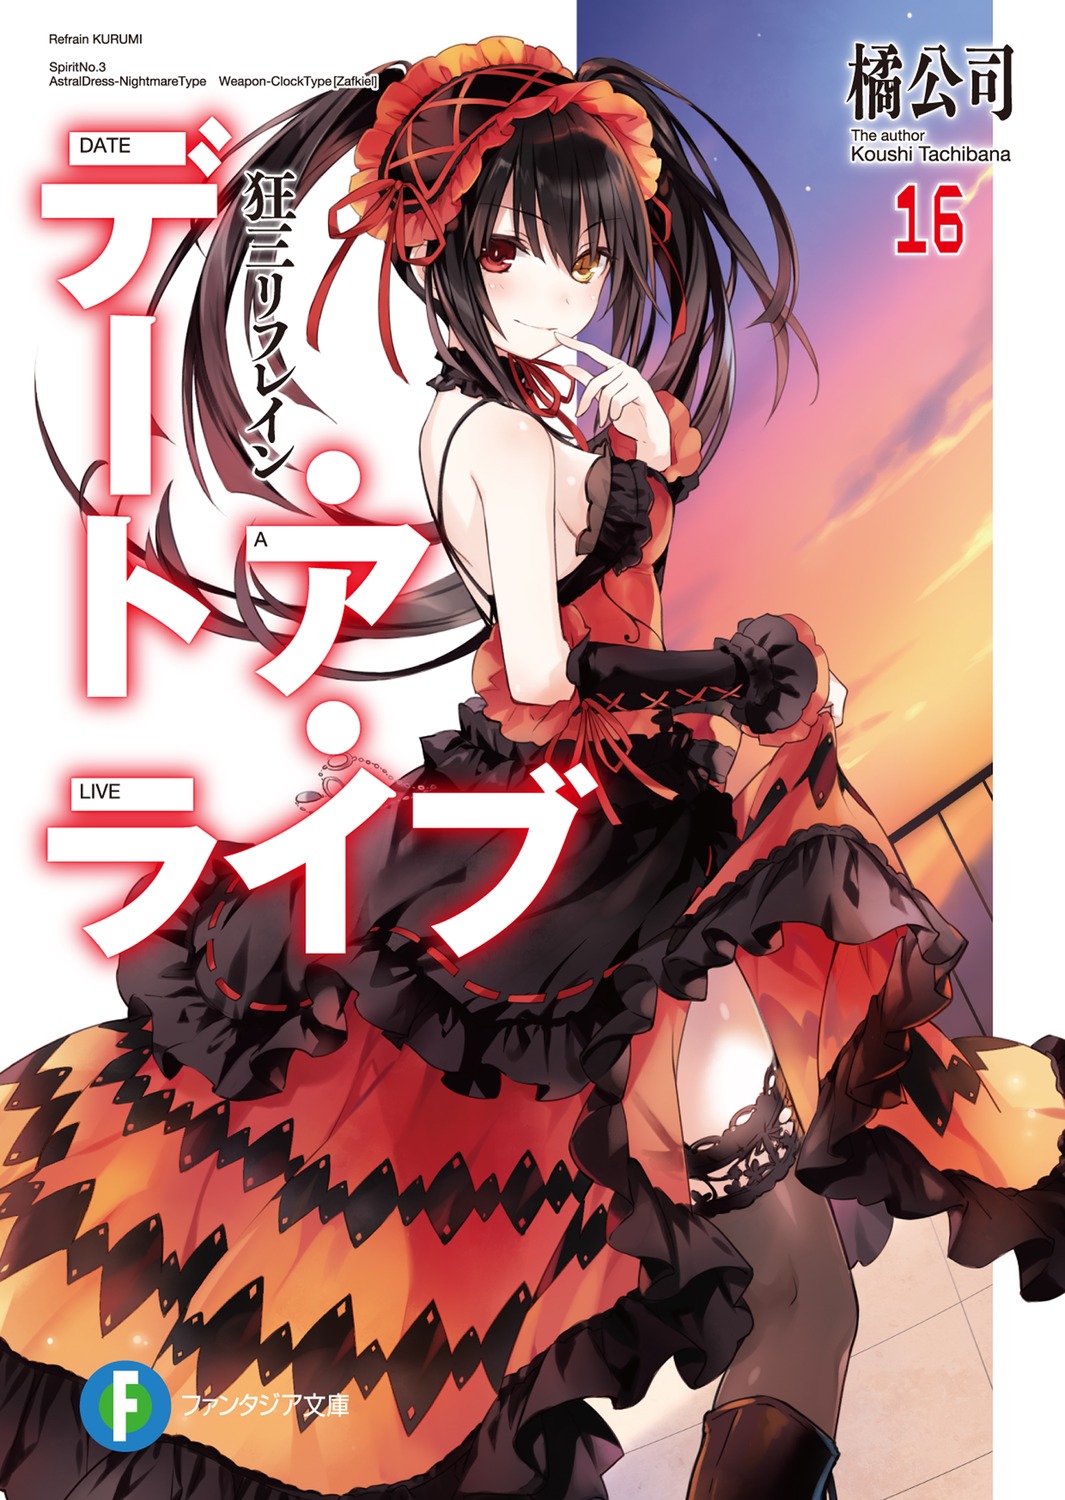 Light Novel Volume 16/Illustrations